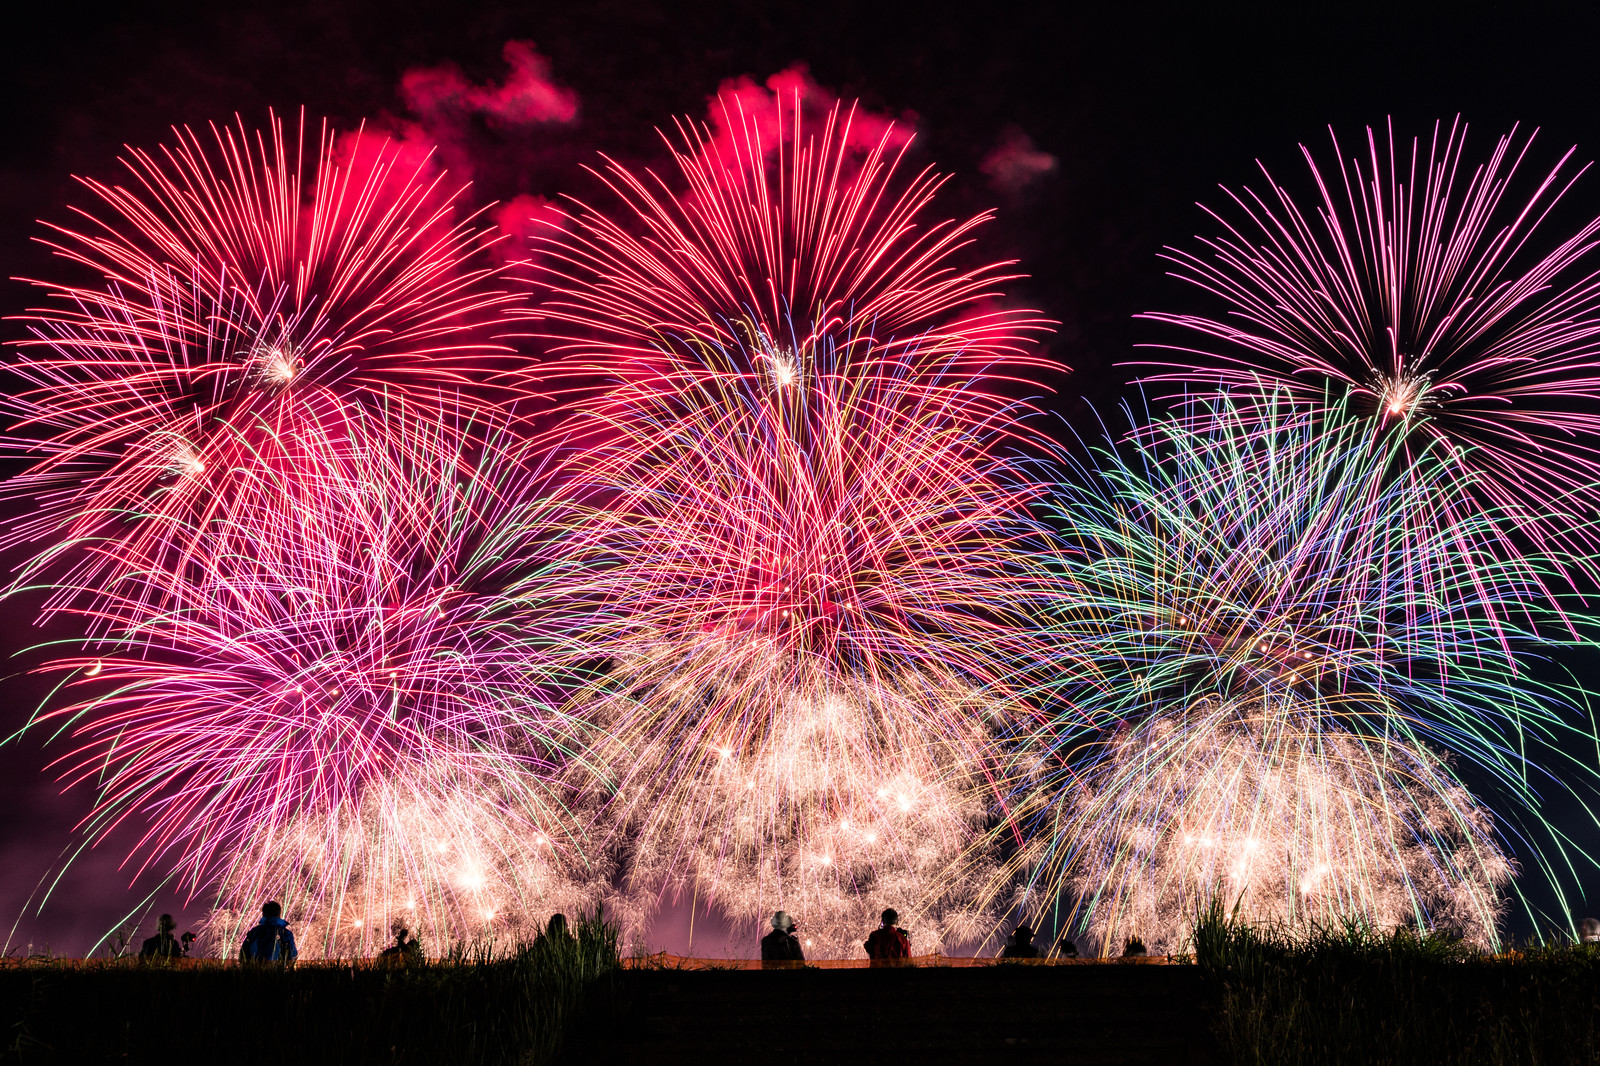 鳥取の夏祭り 花火大会22まとめ とっとりのーと